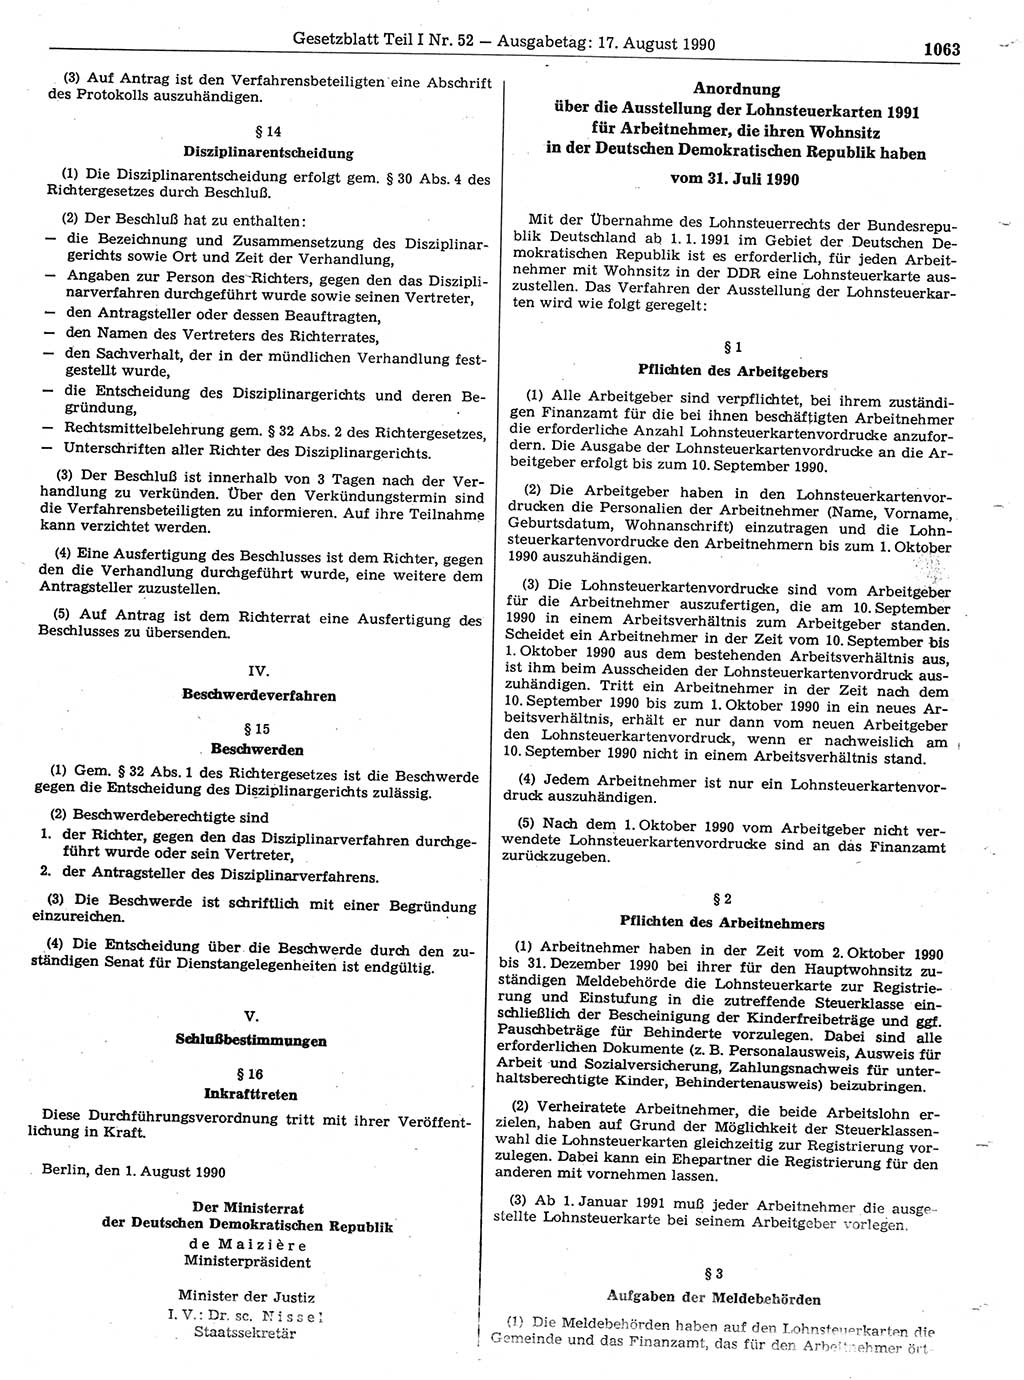 Gesetzblatt (GBl.) der Deutschen Demokratischen Republik (DDR) Teil Ⅰ 1990, Seite 1063 (GBl. DDR Ⅰ 1990, S. 1063)